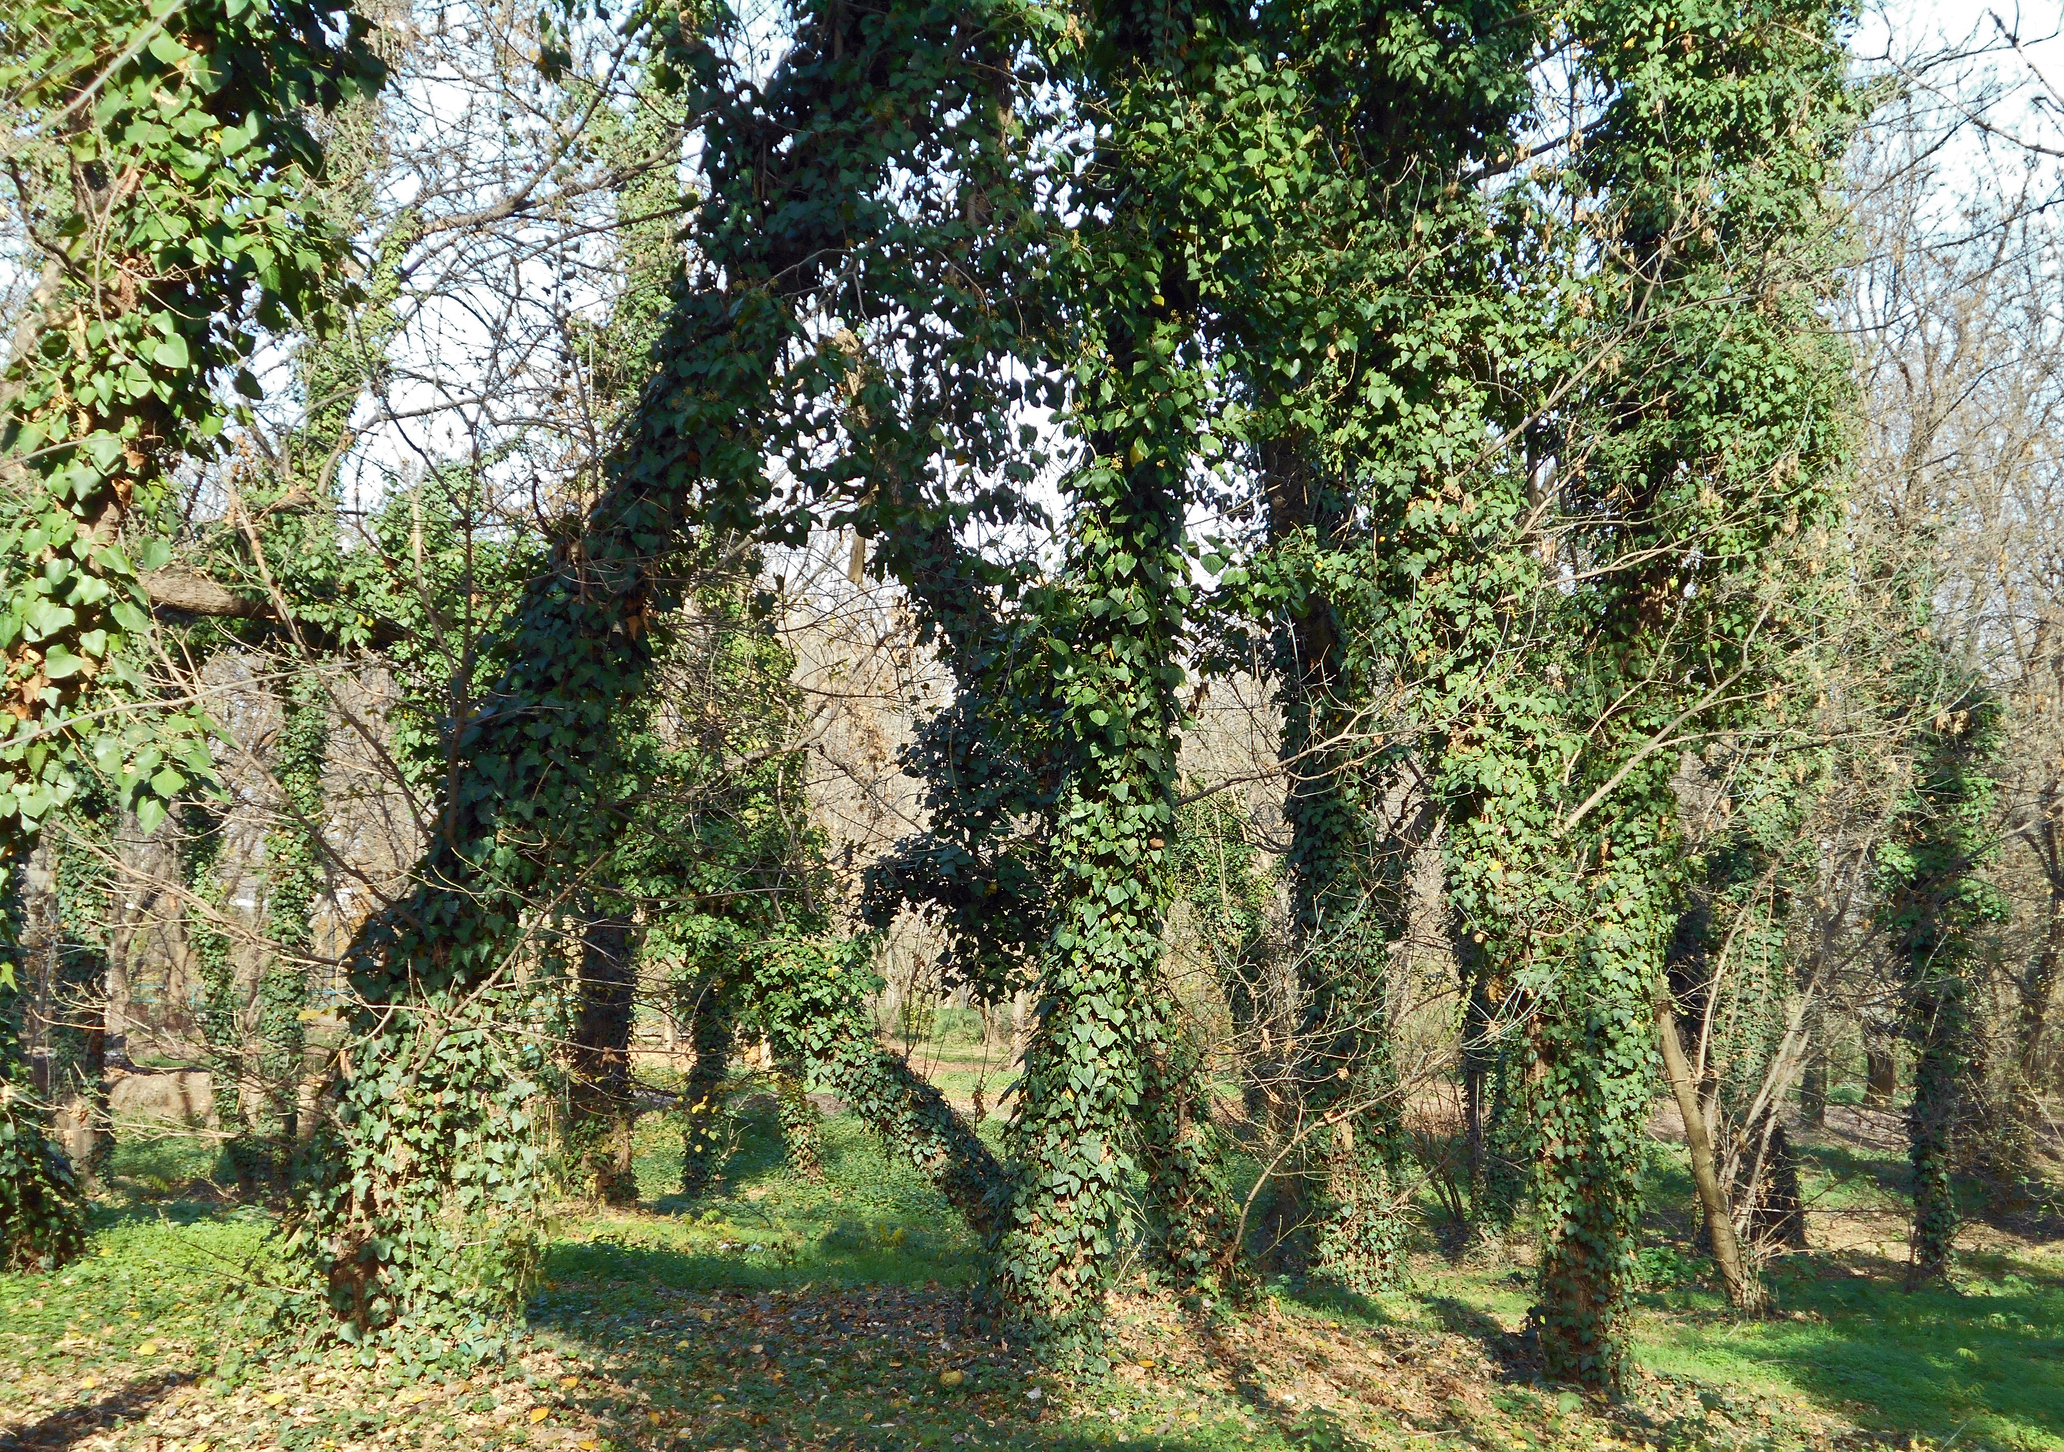 ivy on trees